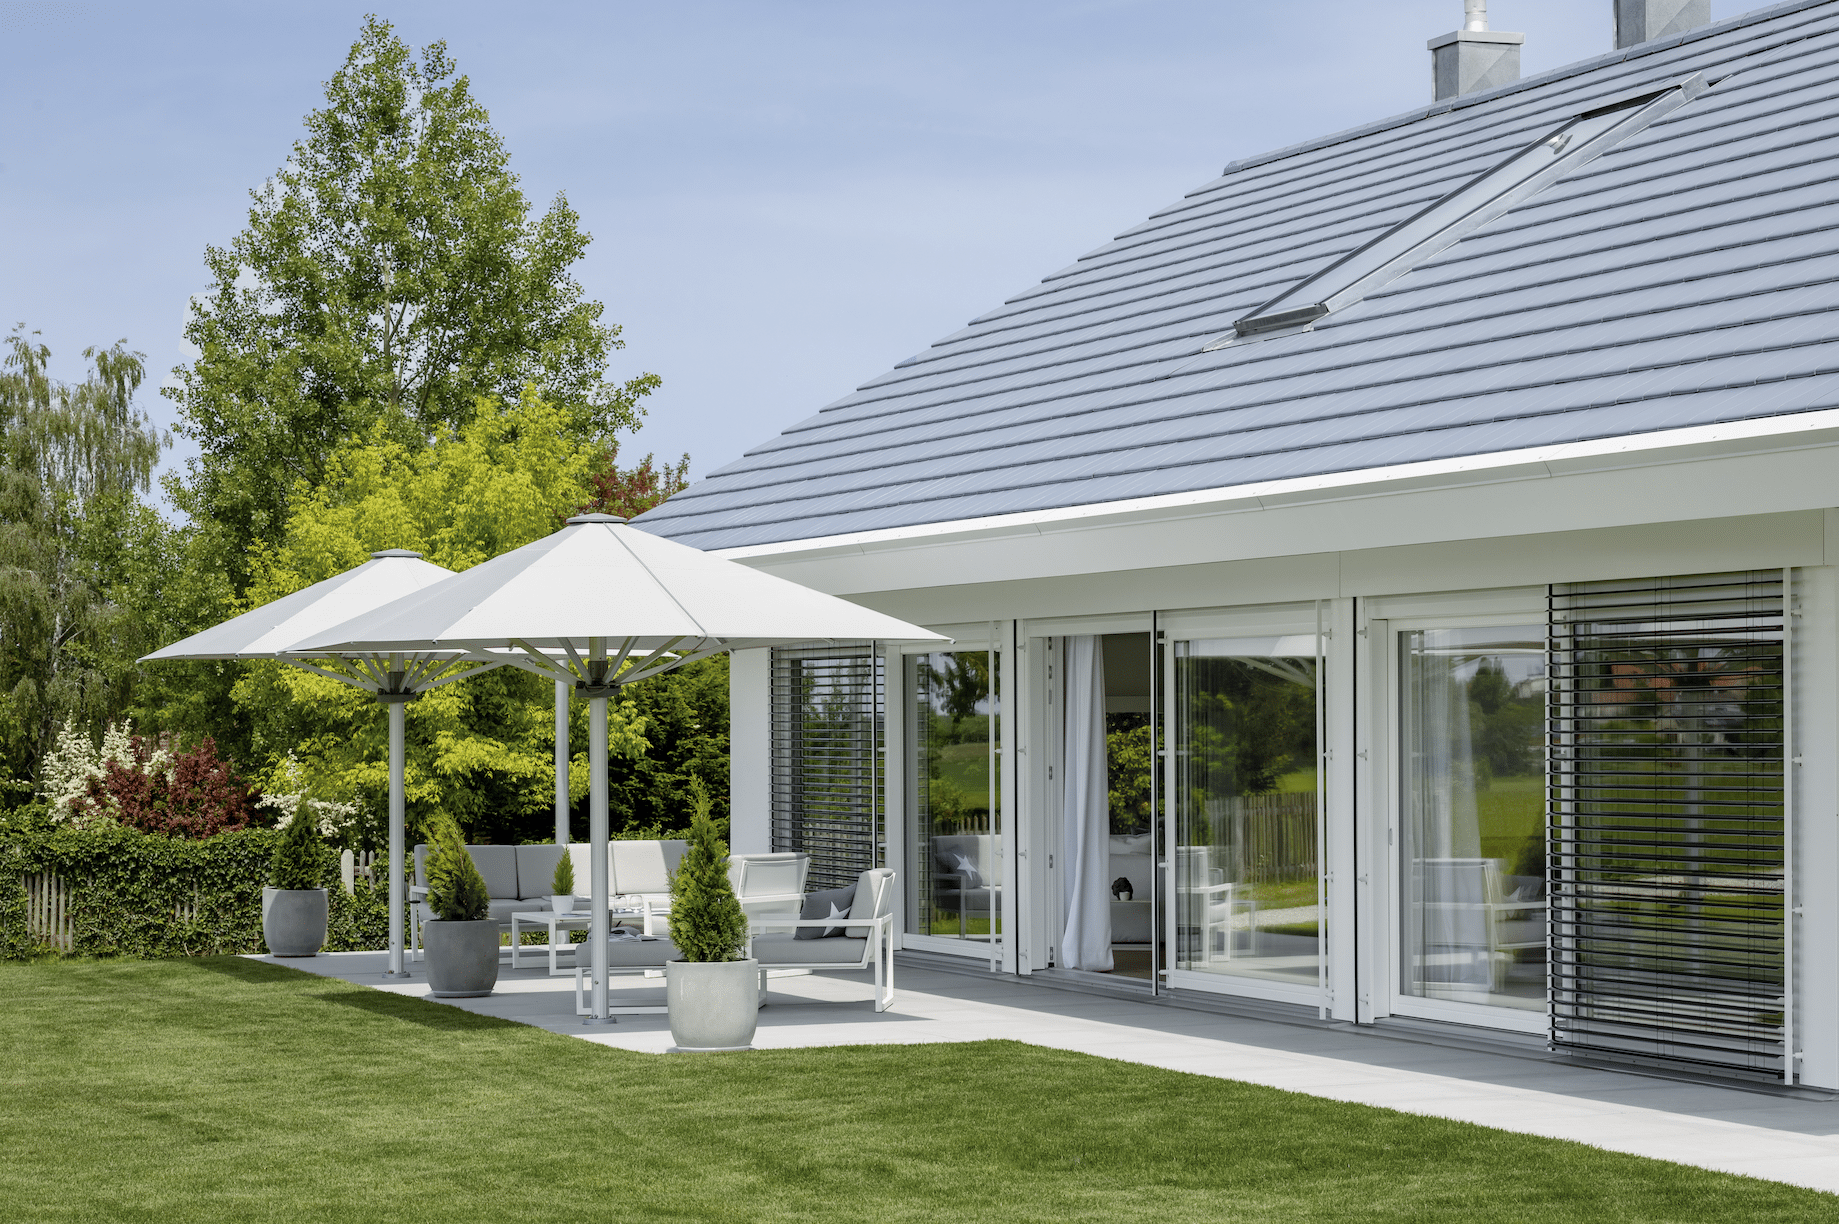 Haus "Poering" von Regnauer mit Terrasse mit Gartenmöbel und aufgespannten Sonnenschirmen.